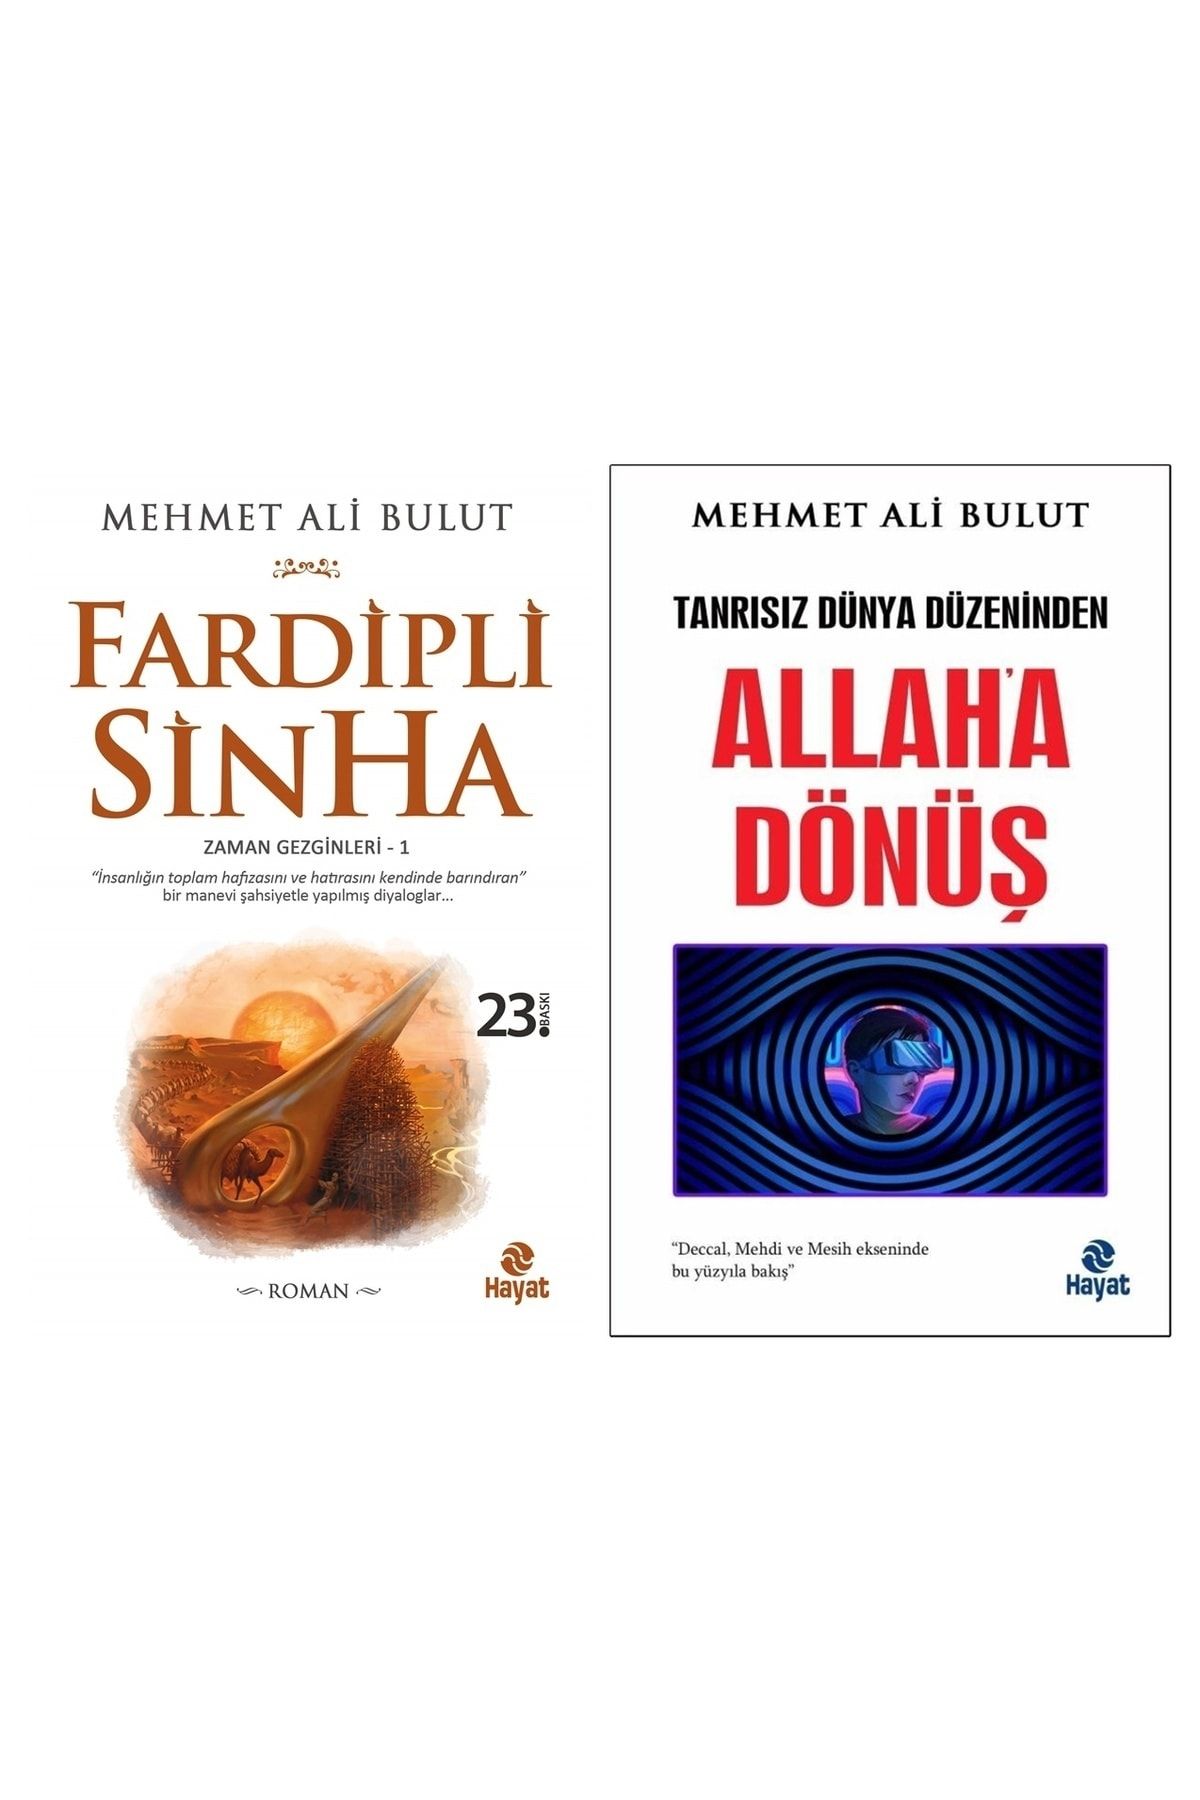 Hayat Yayınları Tanrısız Dünya Düzeninden Allah'a Dönüş - Fardipli Sinha Mehmet Ali Bulut 2 Kitap